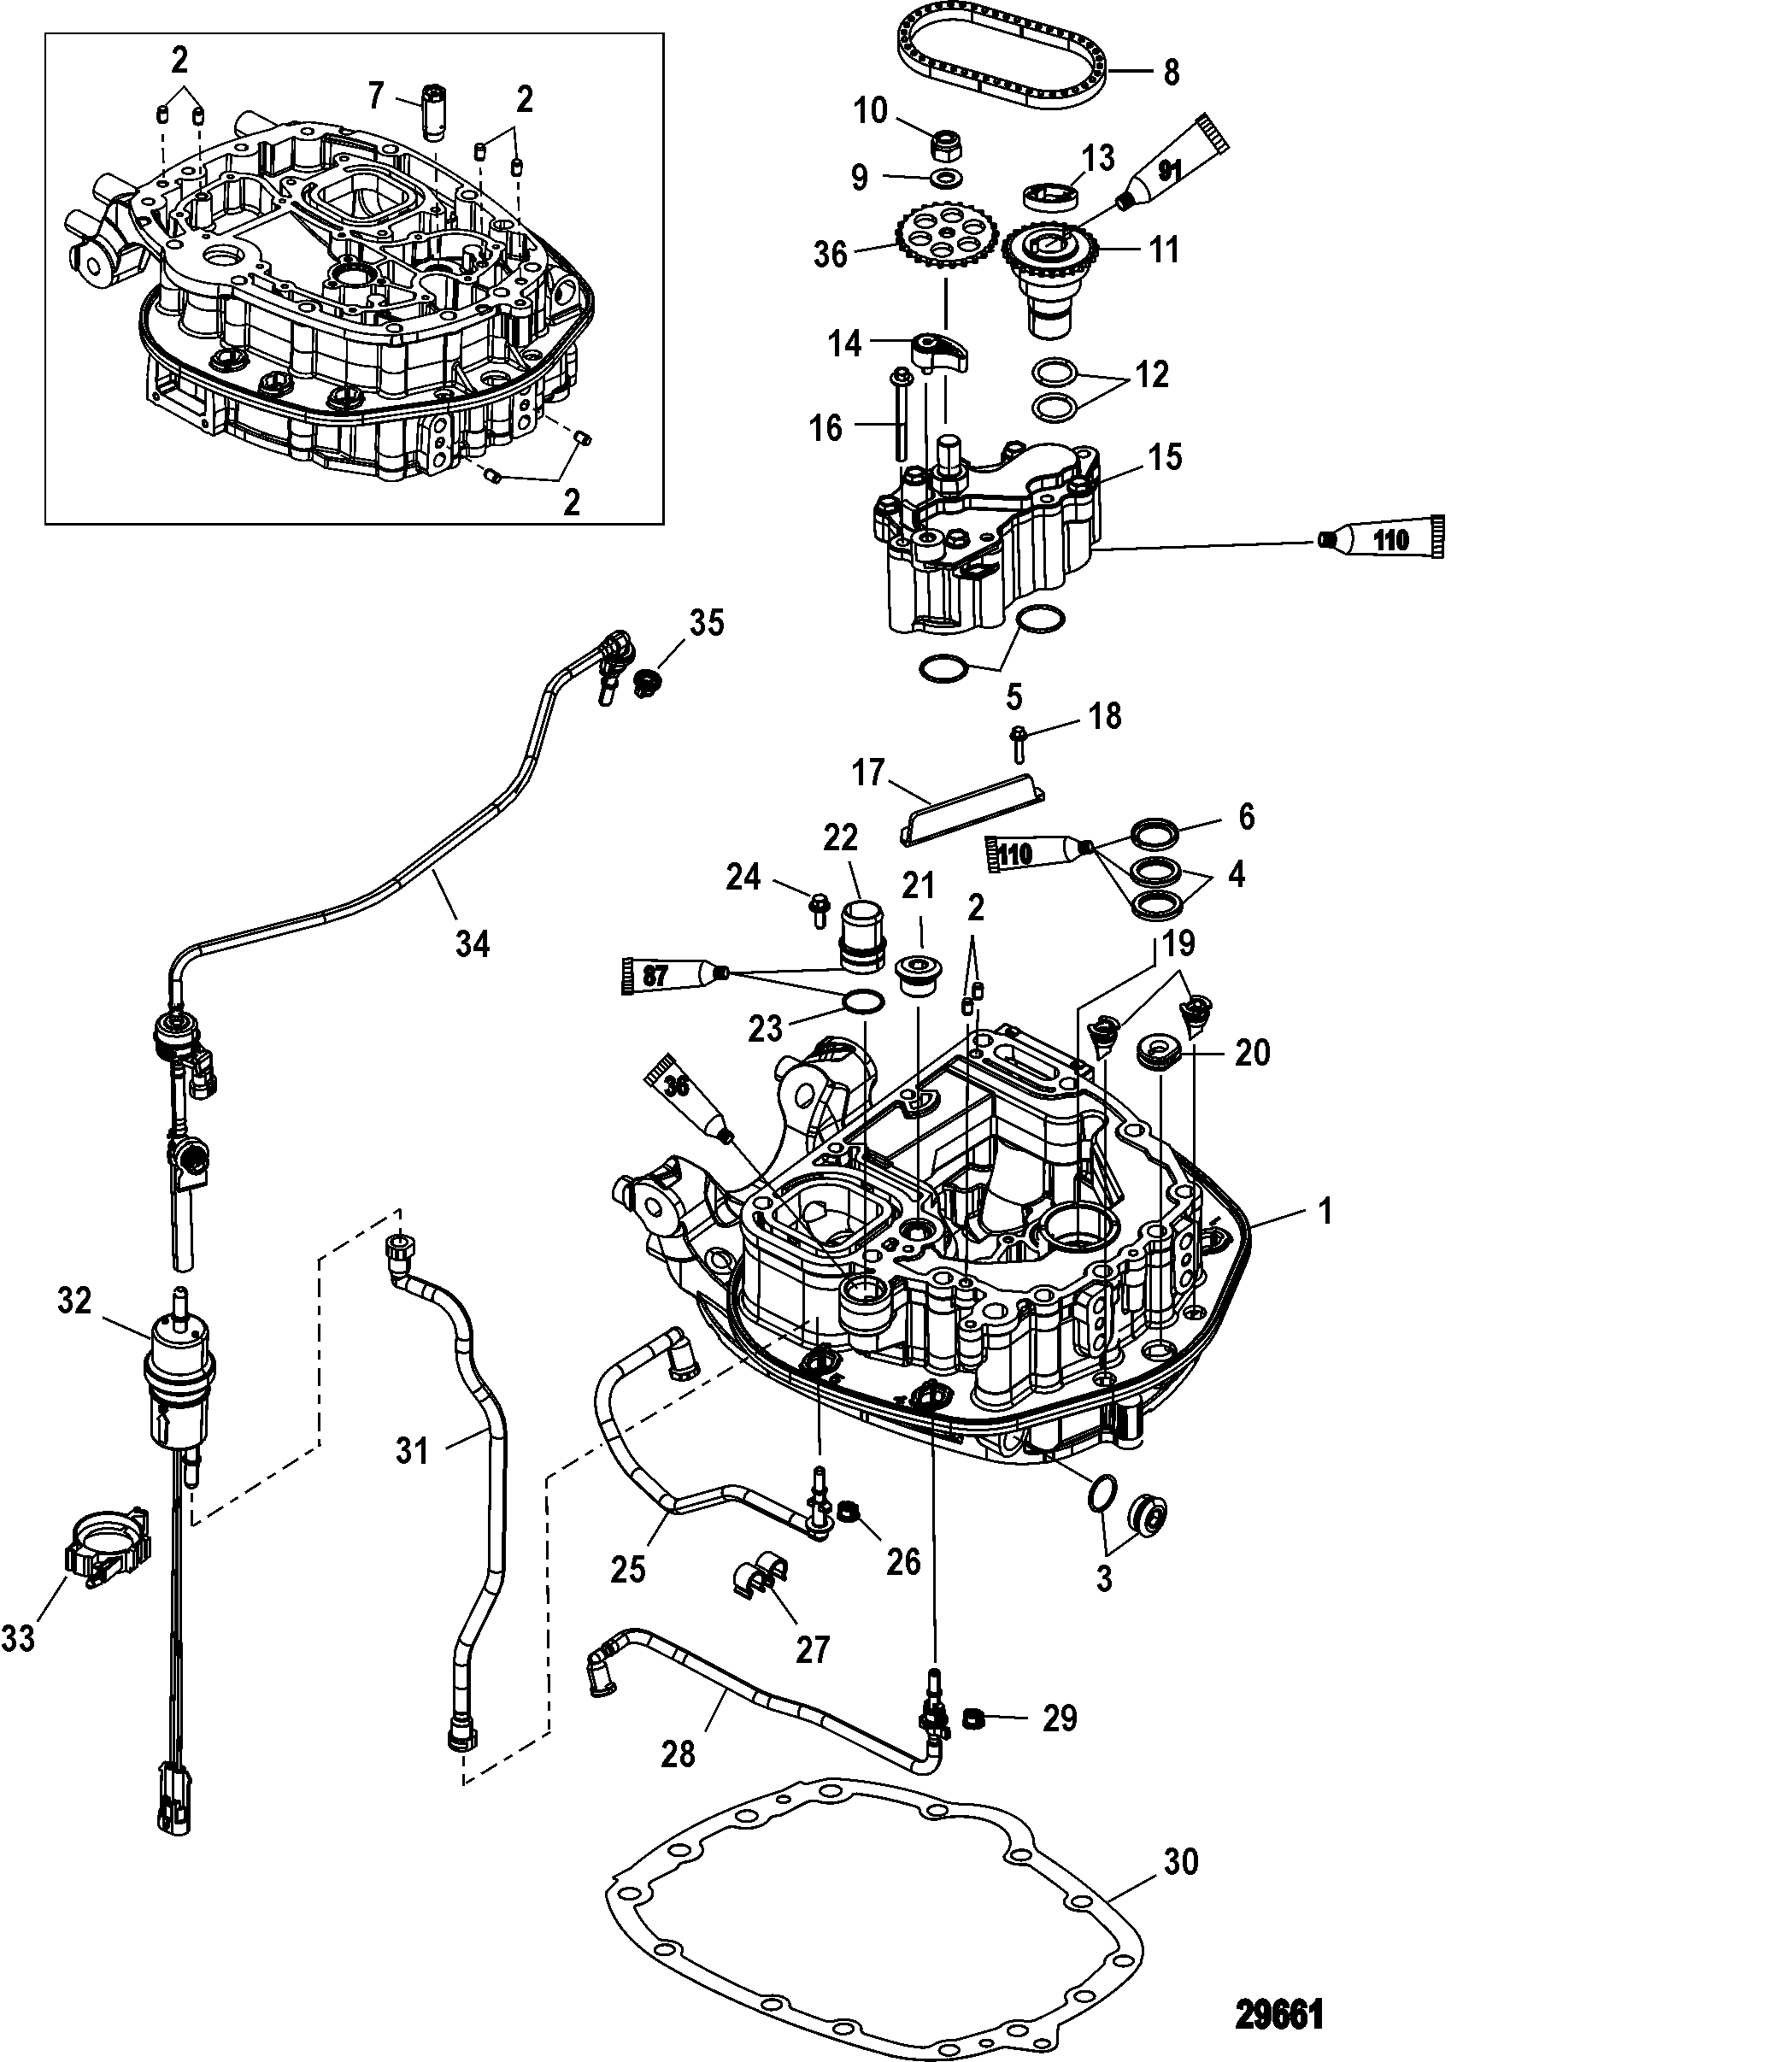 Oil Pump/Adaptor Plate-Upper